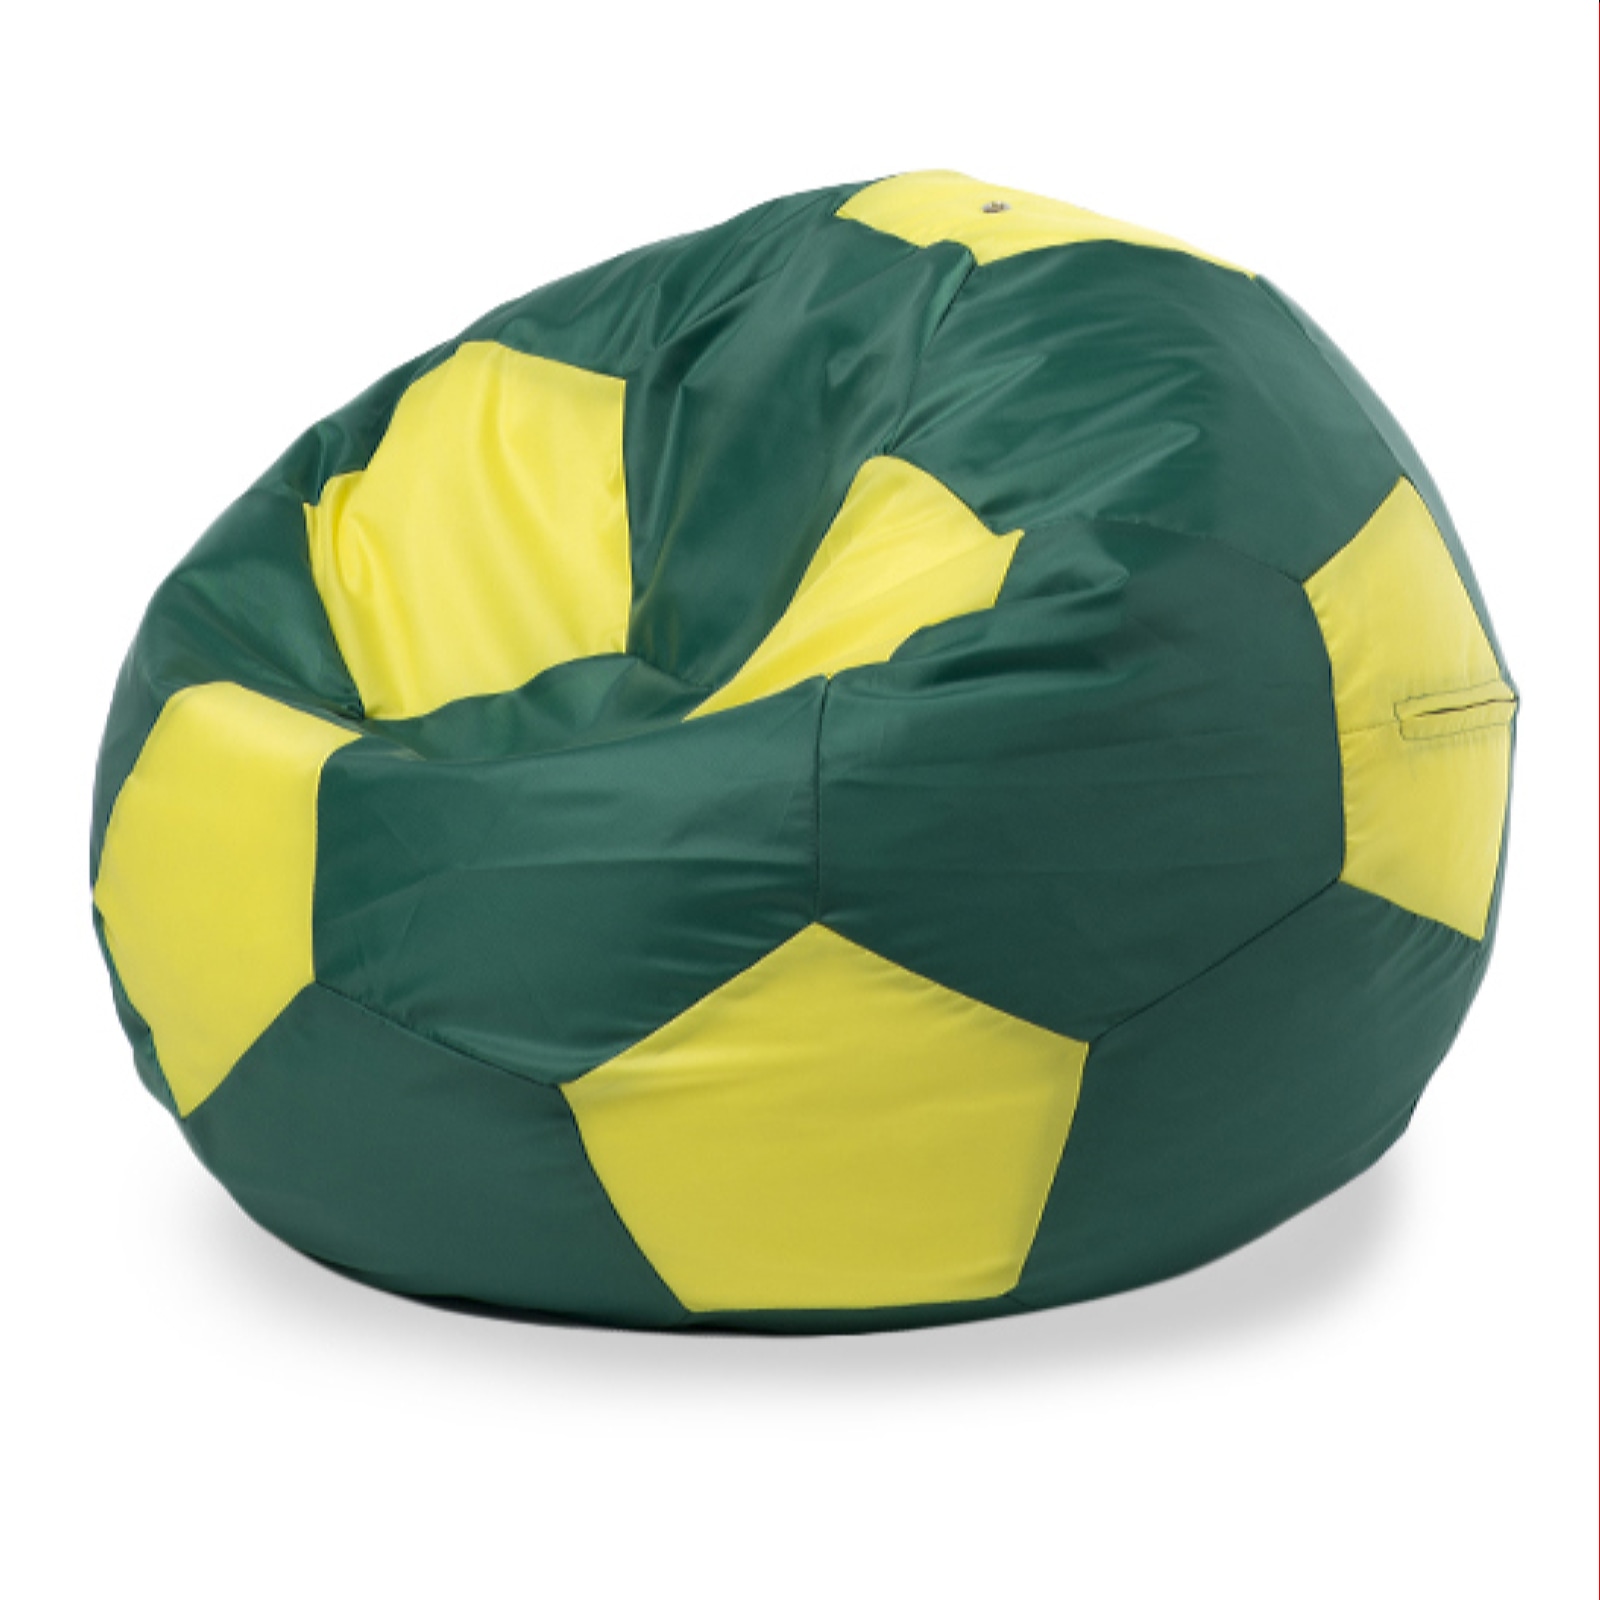 фото Кресло-мешок пуффбери мяч оксфорд xxl, зеленый, желтый